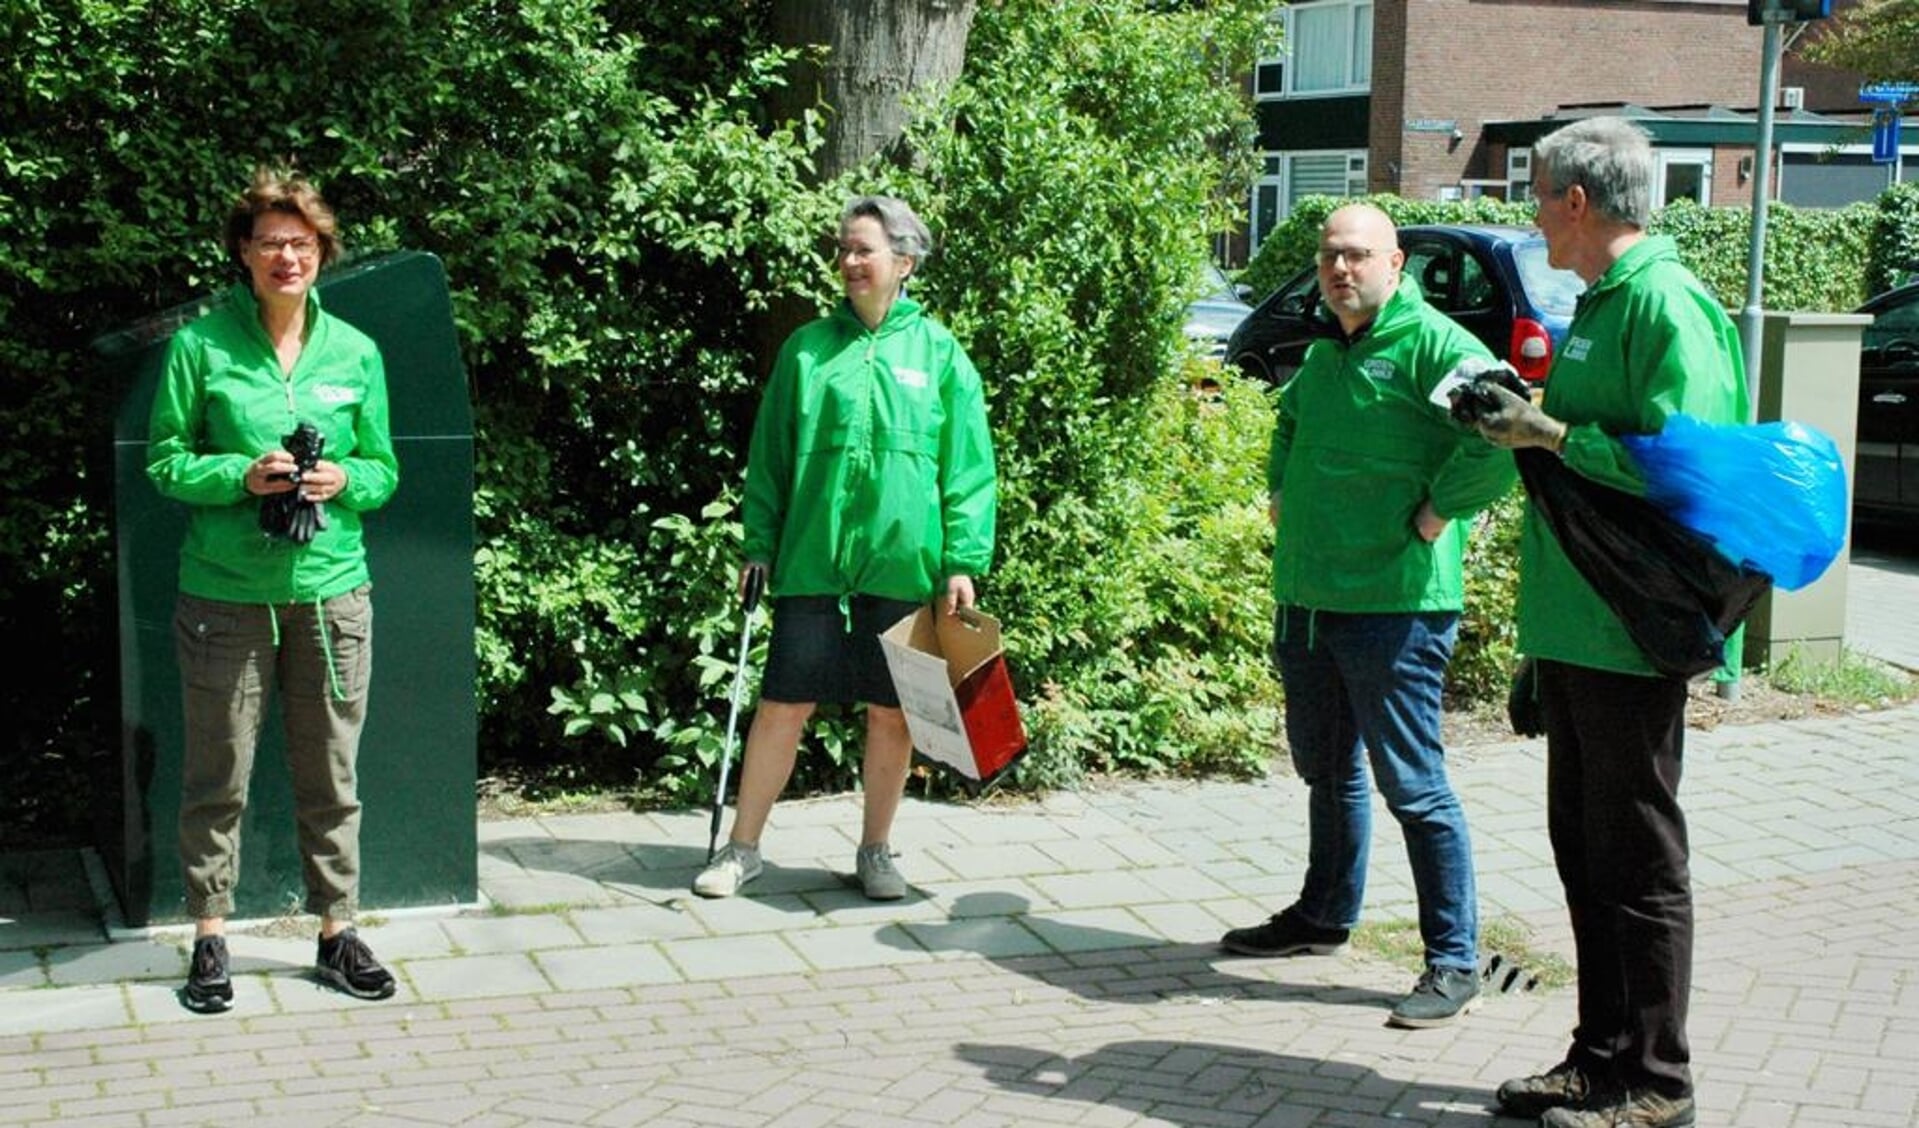 Opruimen in de Vlietwijk. De GroenLinks fractie, wethouder Spil en 15 bewoners haalden zakken met zwerfafval van straat. 